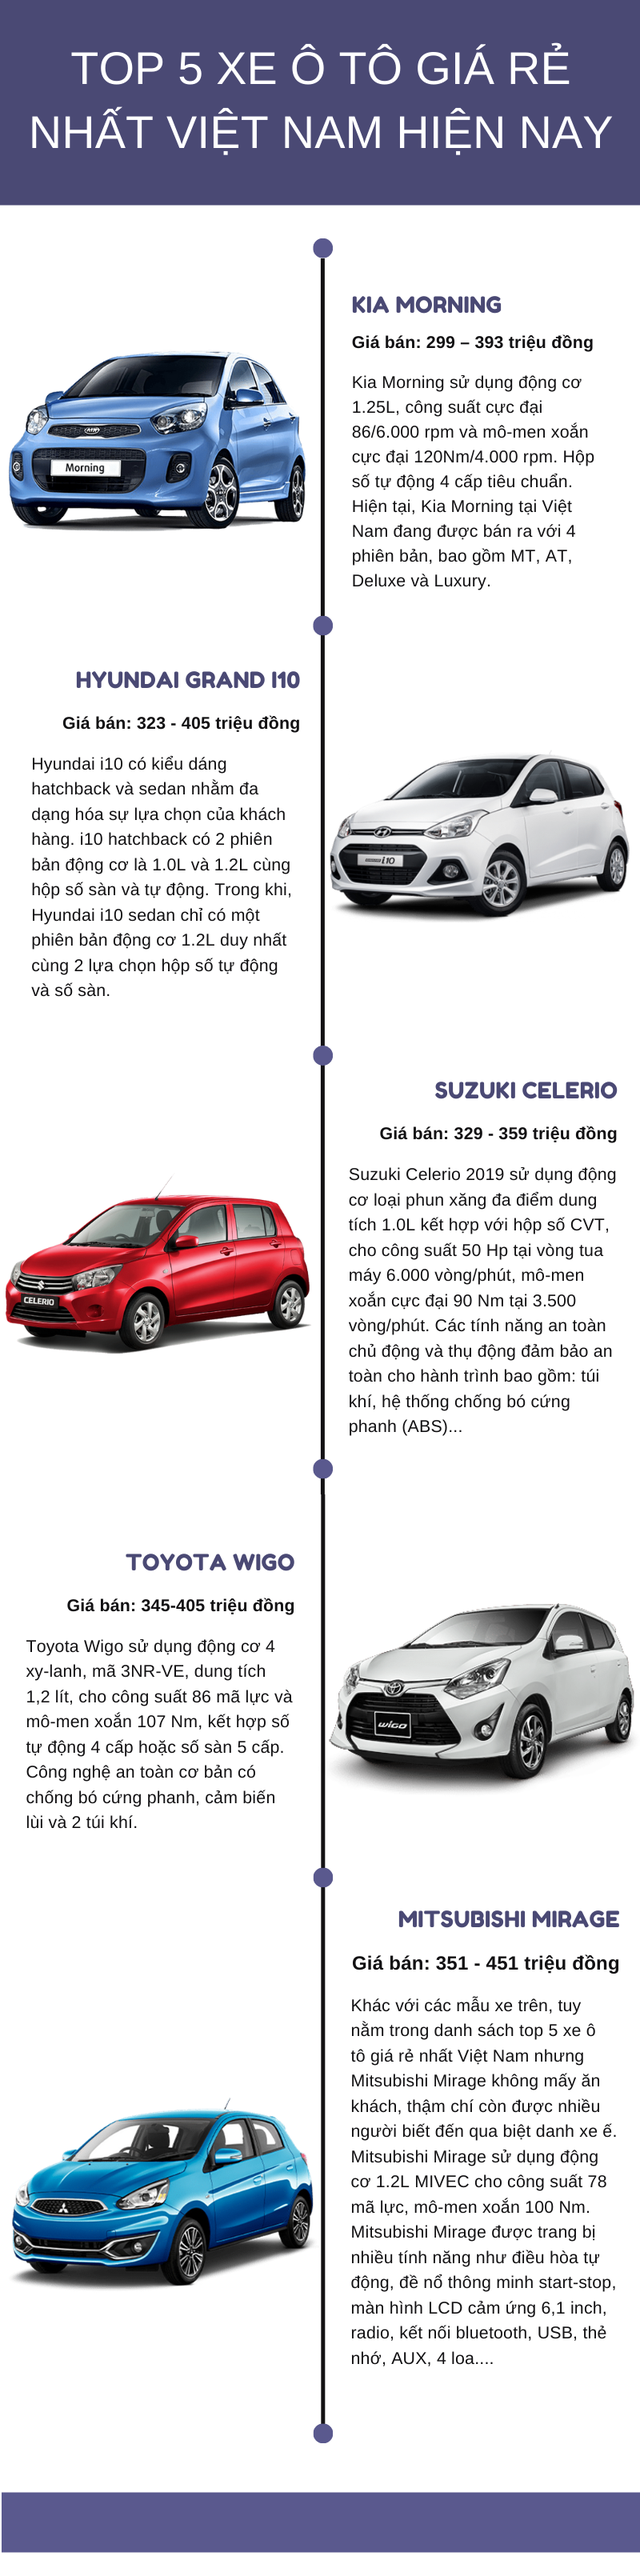 Top 5 xe ô tô giá rẻ nhất Việt Nam hiện nay, giá chỉ từ 290 triệu - Ảnh 1.